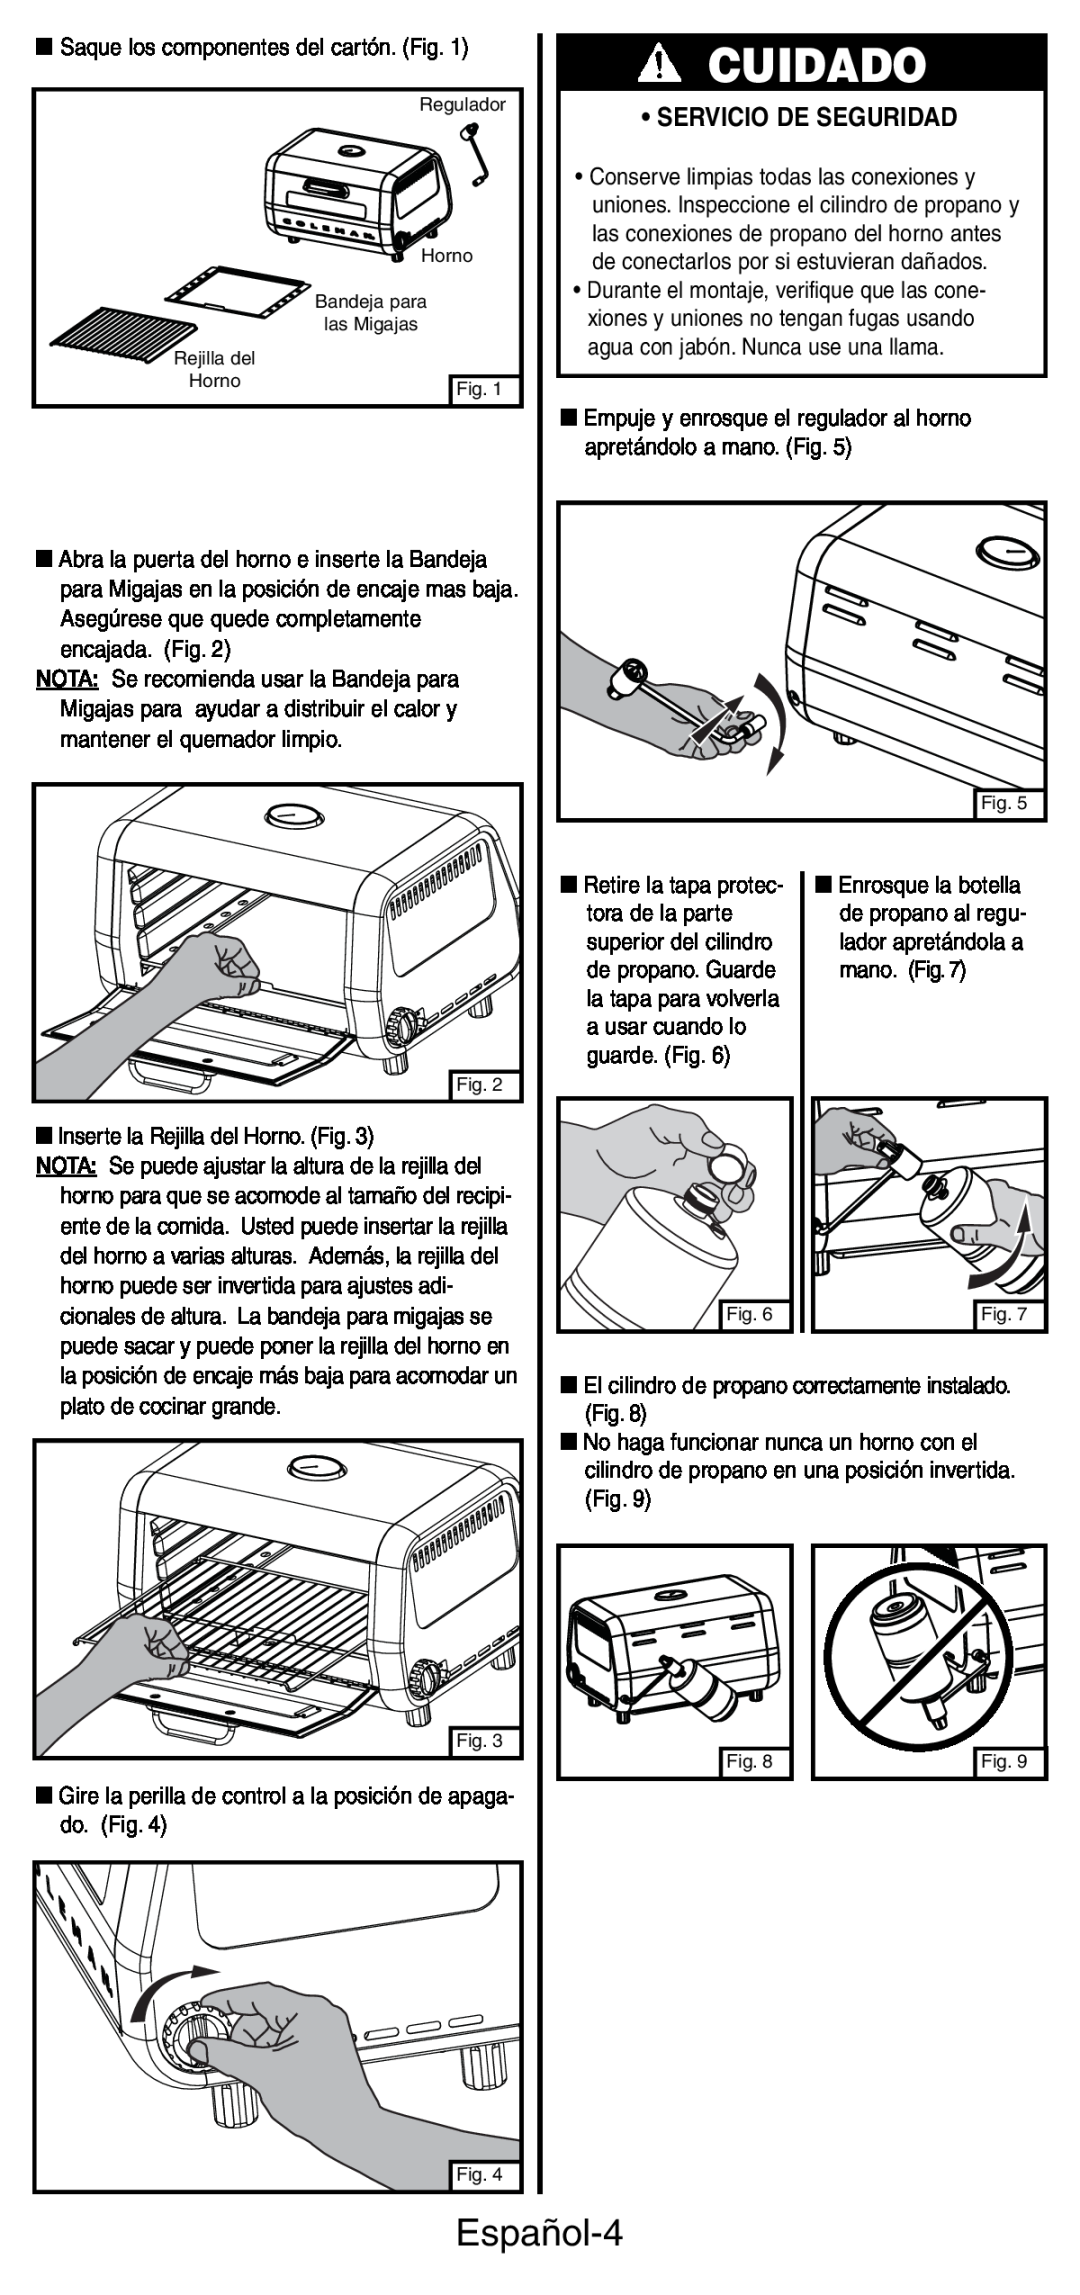 Coleman 9927 manual Cuidado, Español-4, • Servicio De Seguridad 